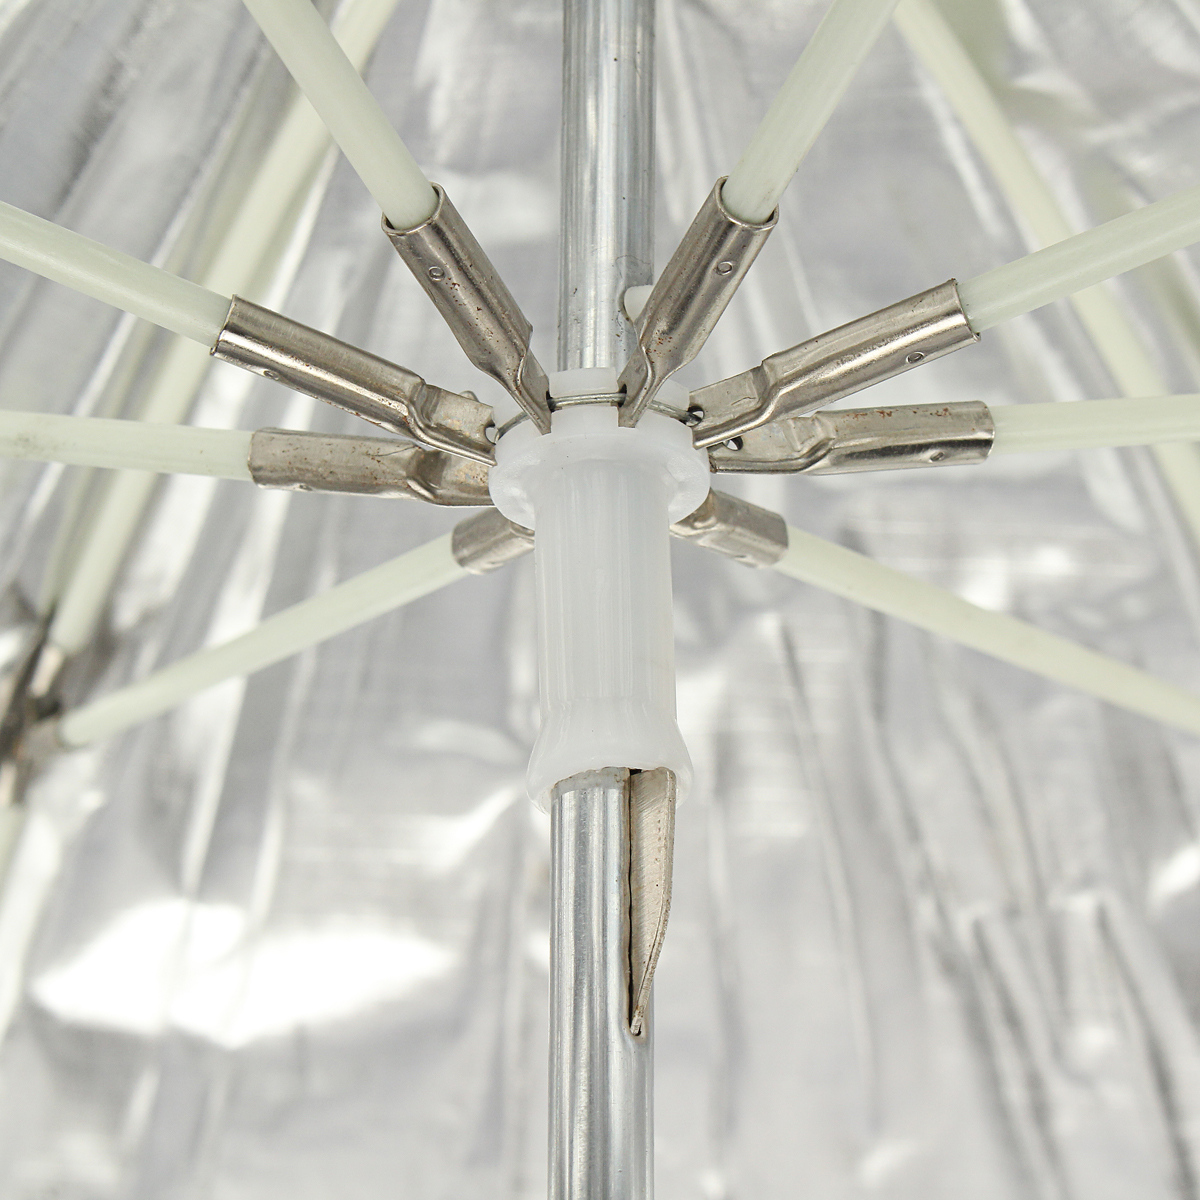 Octagonal Flash Honeycomb Grid Umbrella